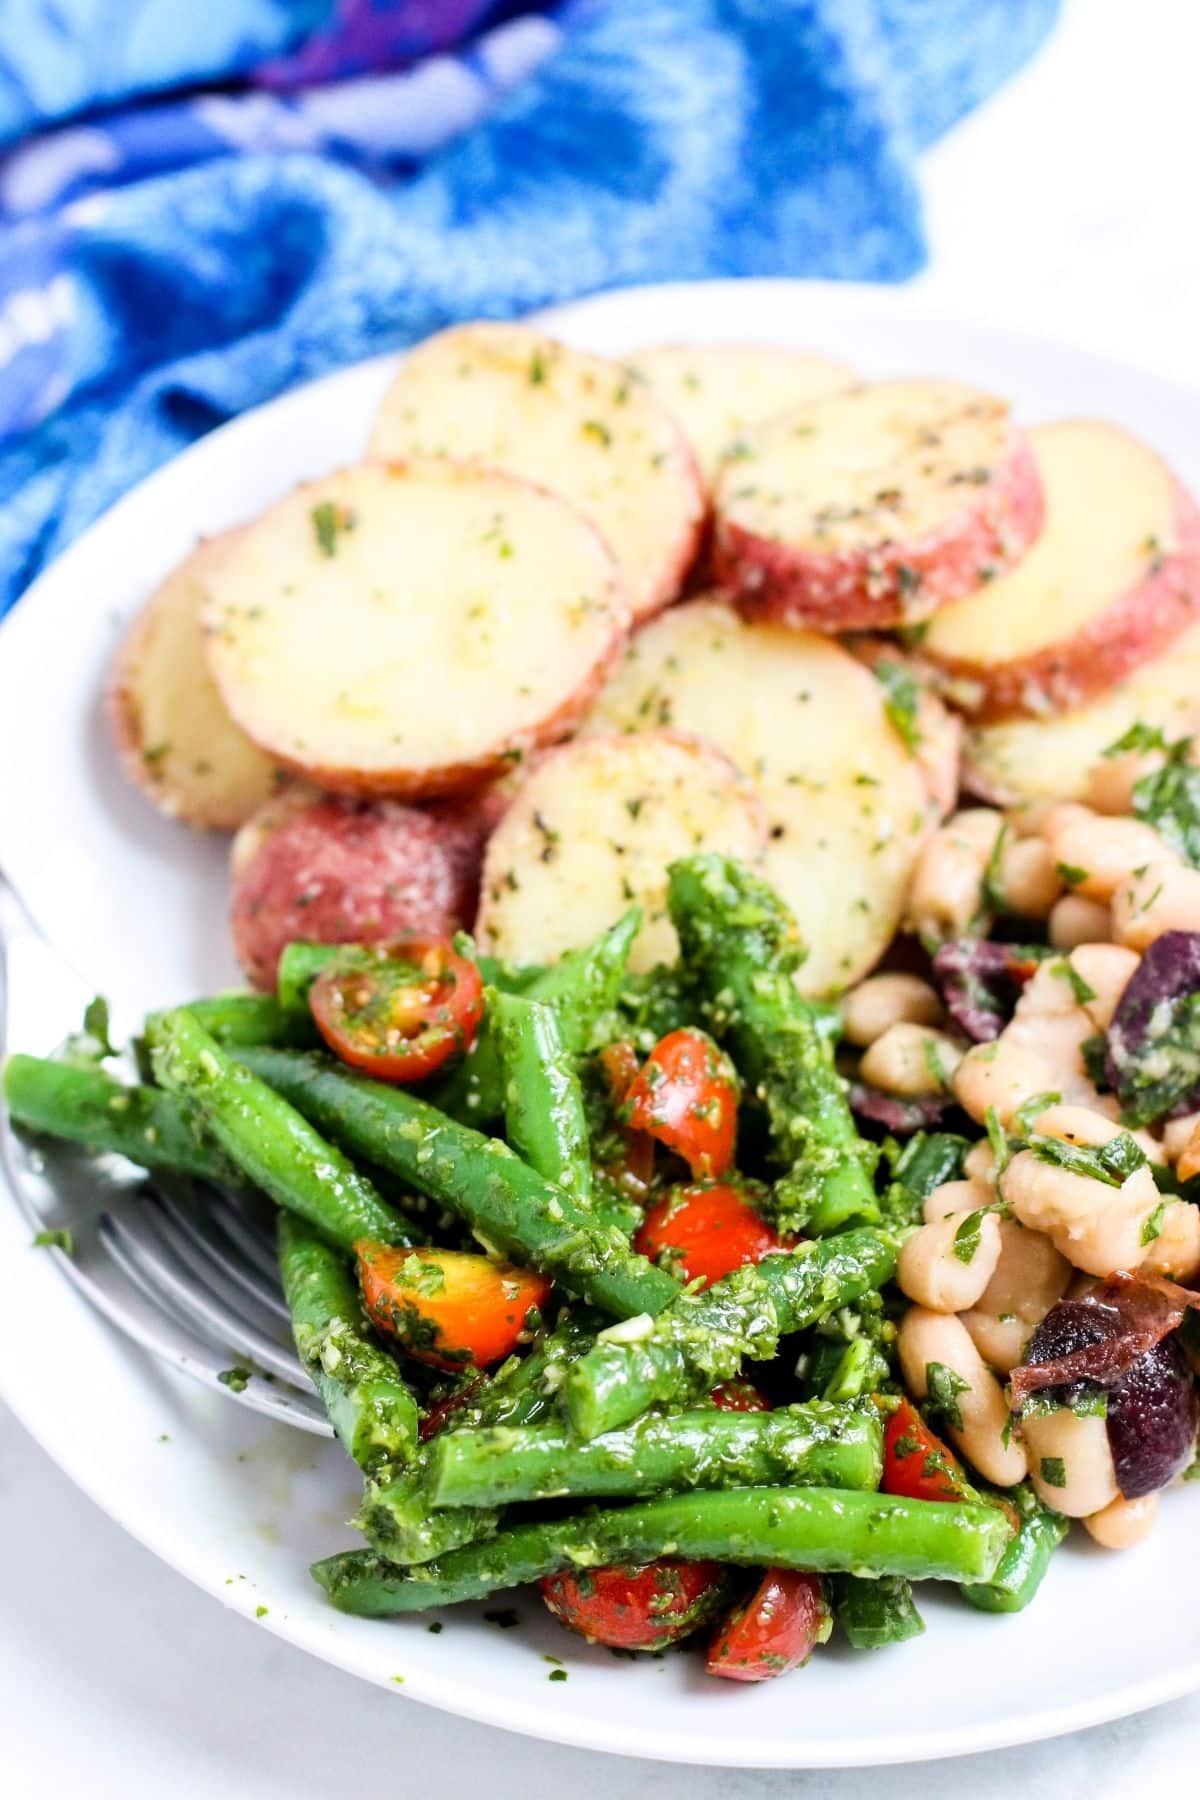 Plato de ensalada de patata, ensalada de judías cannellini y ensalada mediterránea de judías verdes